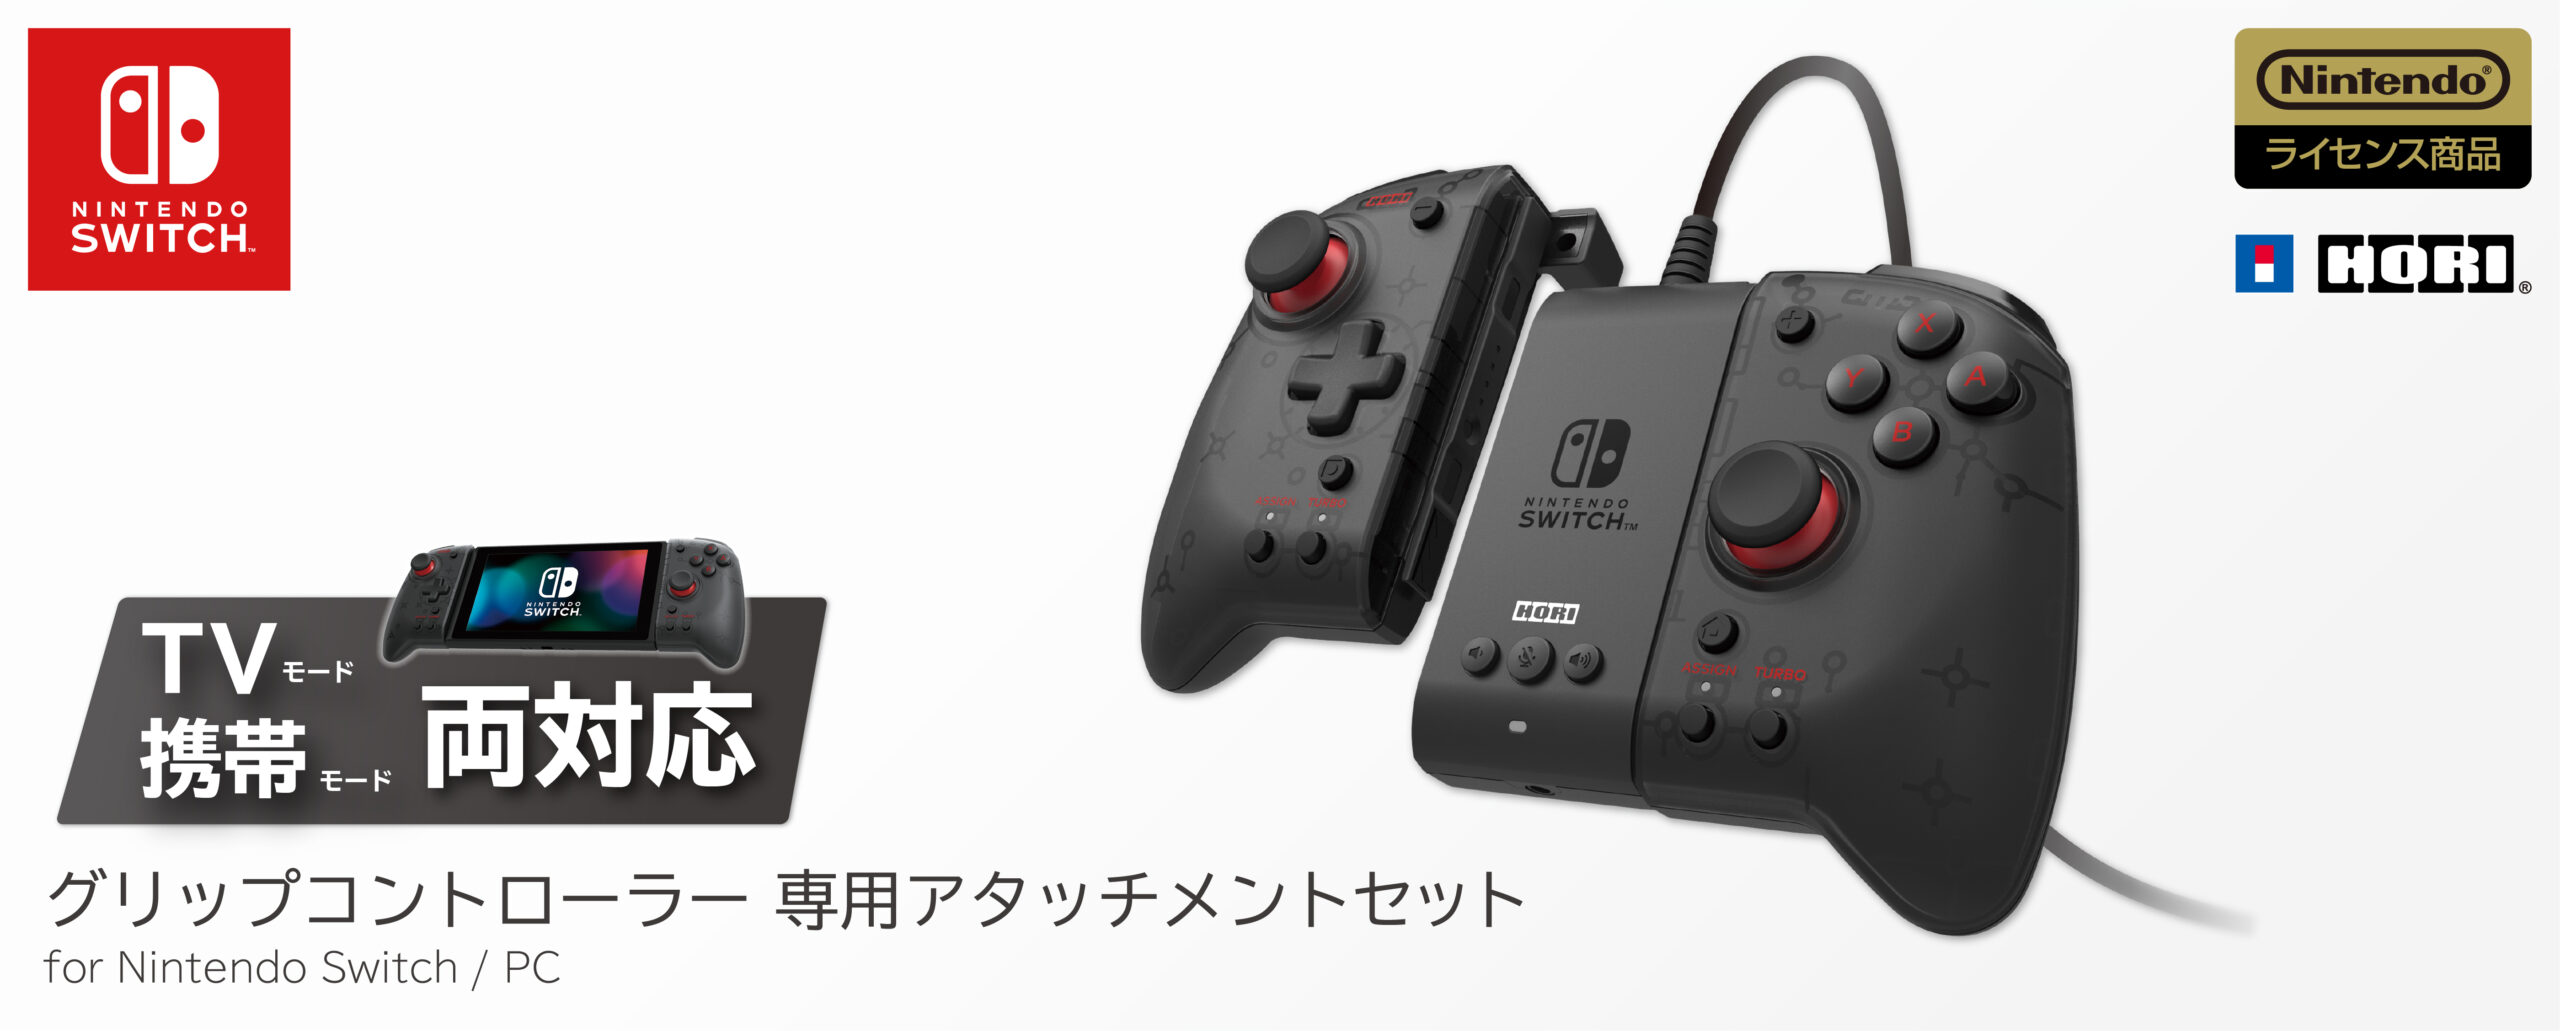 株式会社 HORI グリップコントローラー 専用アタッチメントセット for Nintendo Switch PC